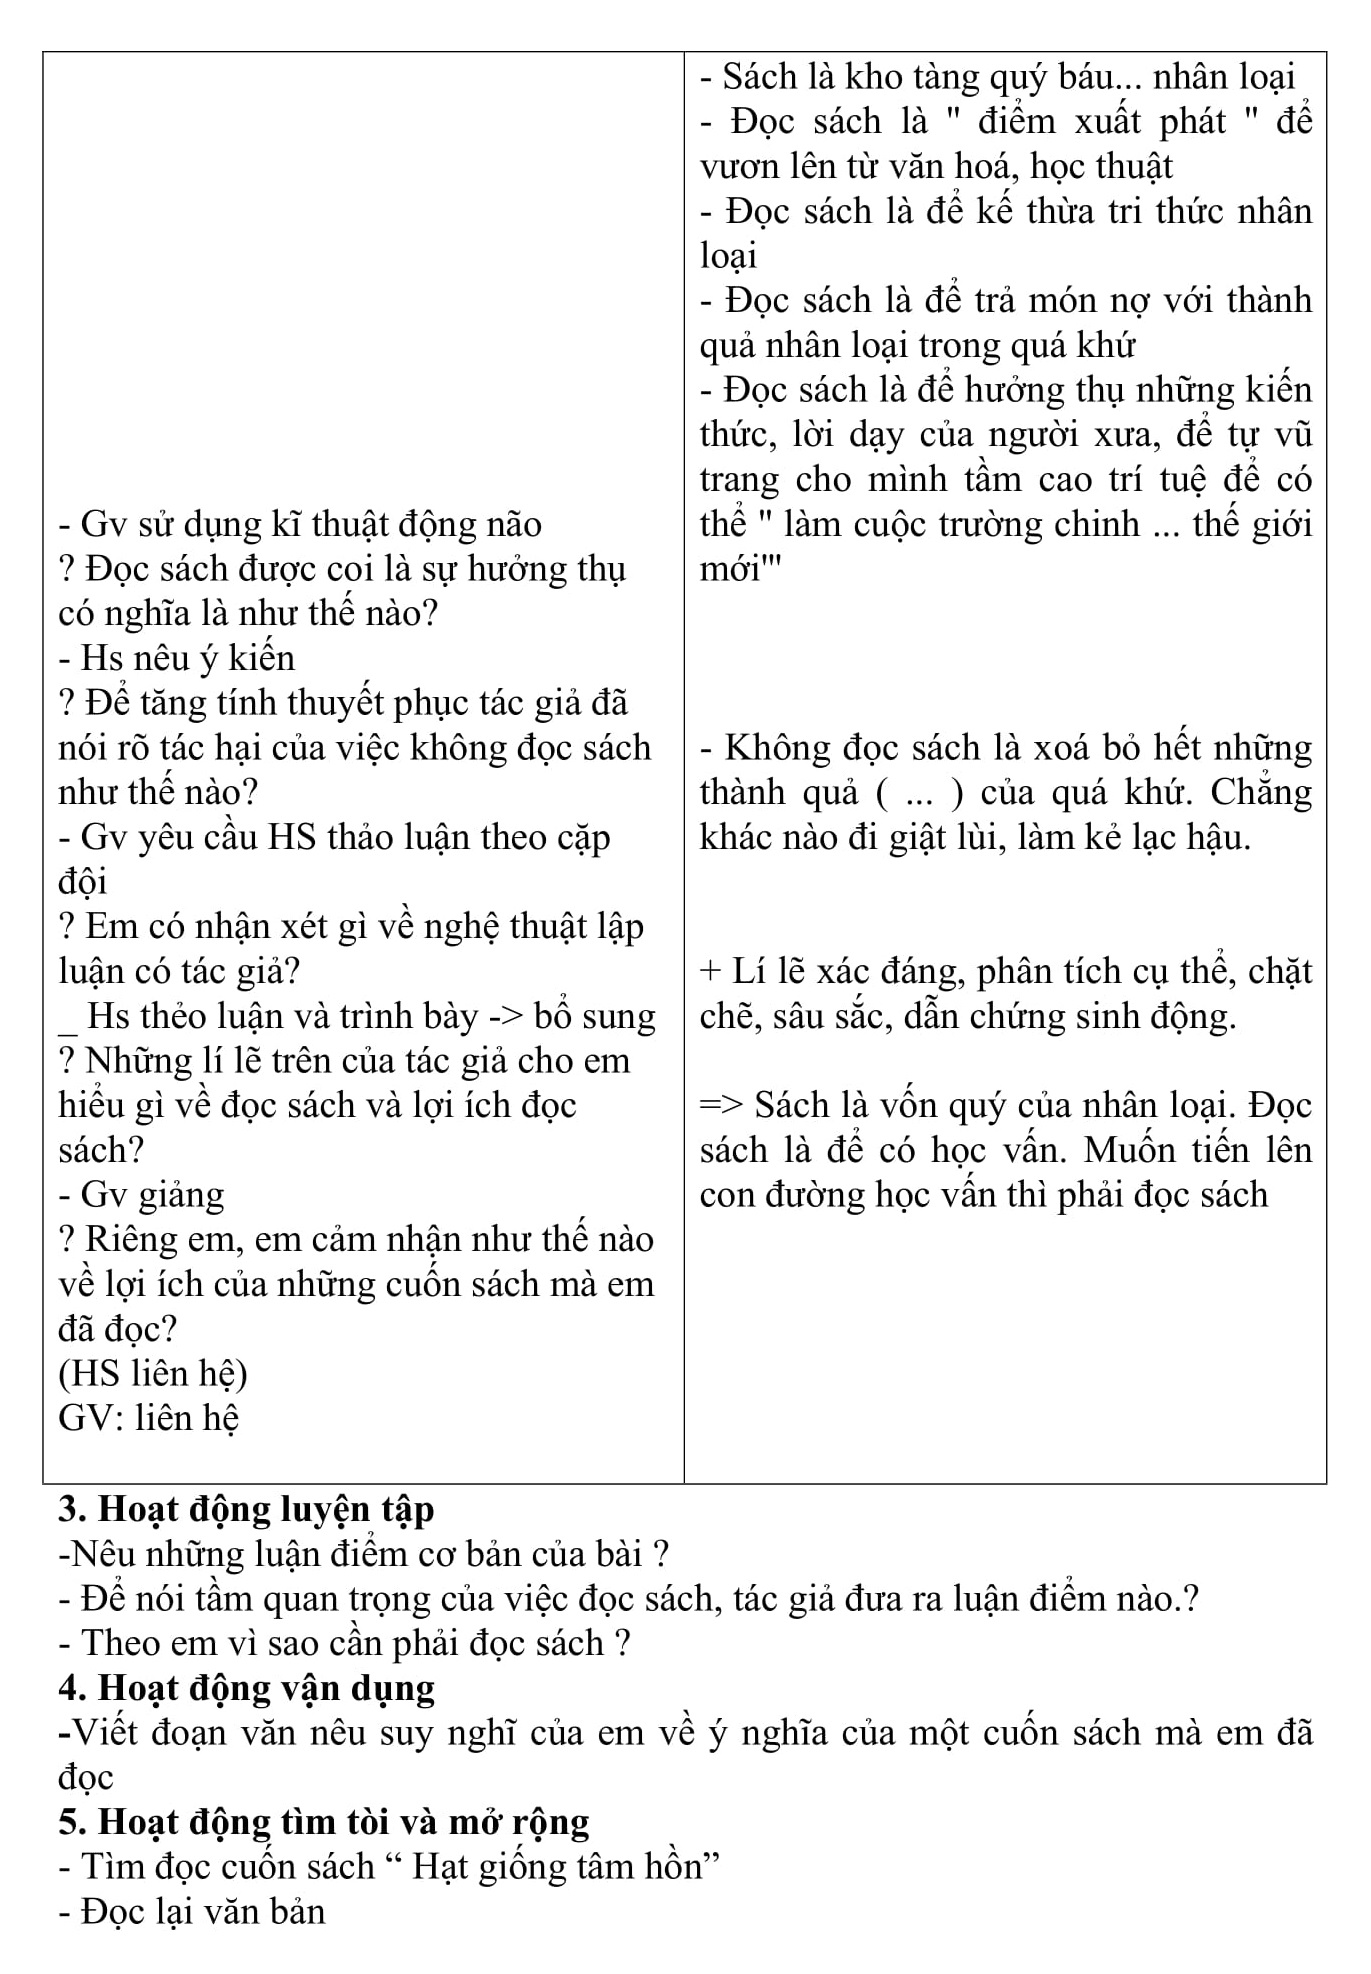 Giáo án ngữ văn HK2 được biên soạn theo phương pháp mới